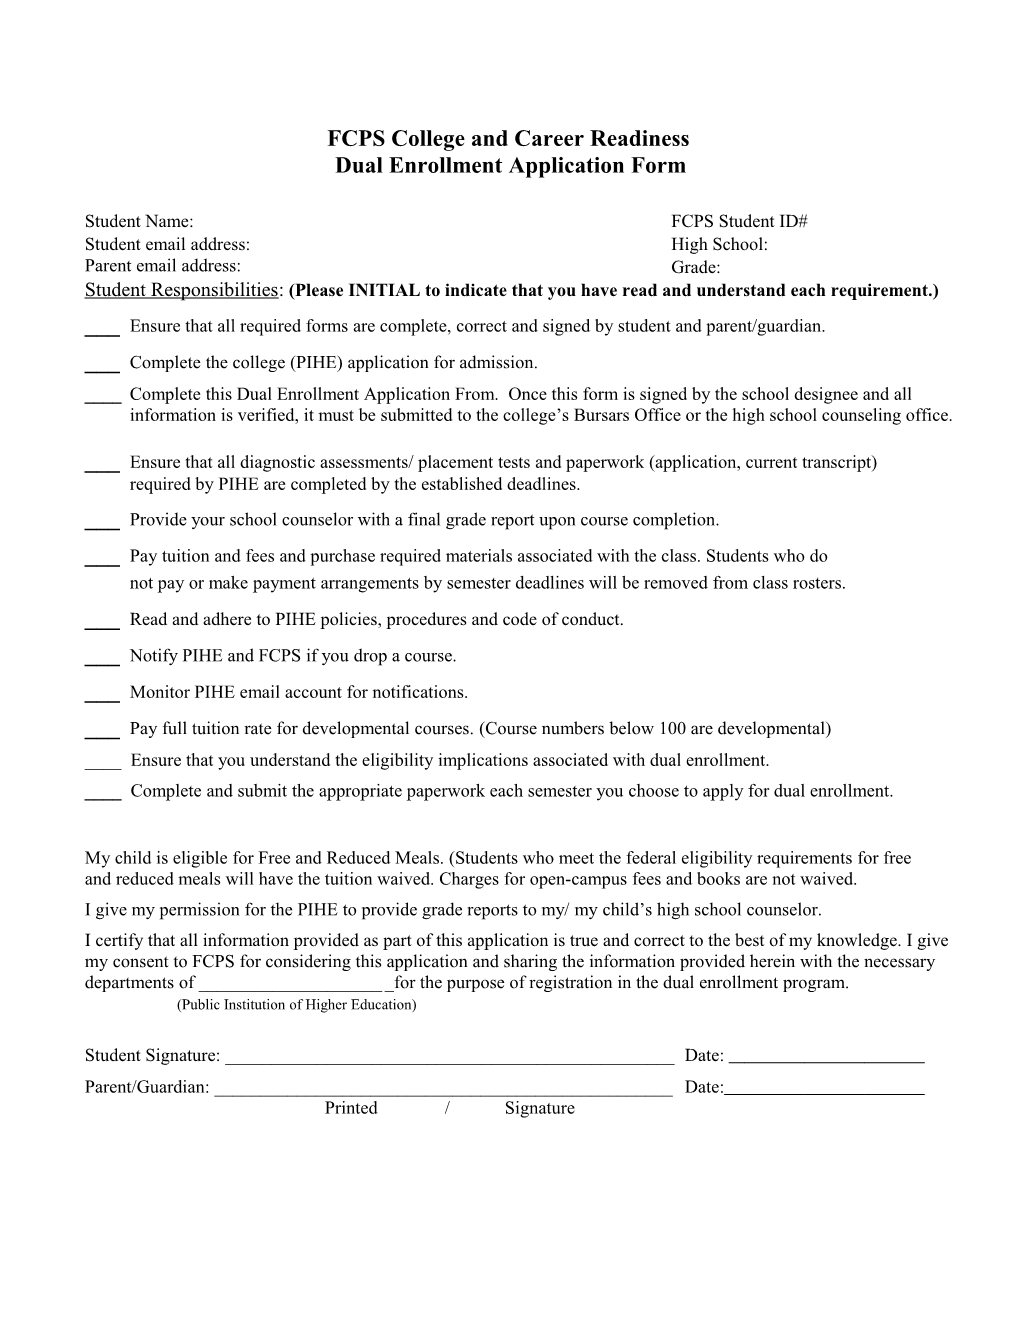 Dual Enrollment Application Form